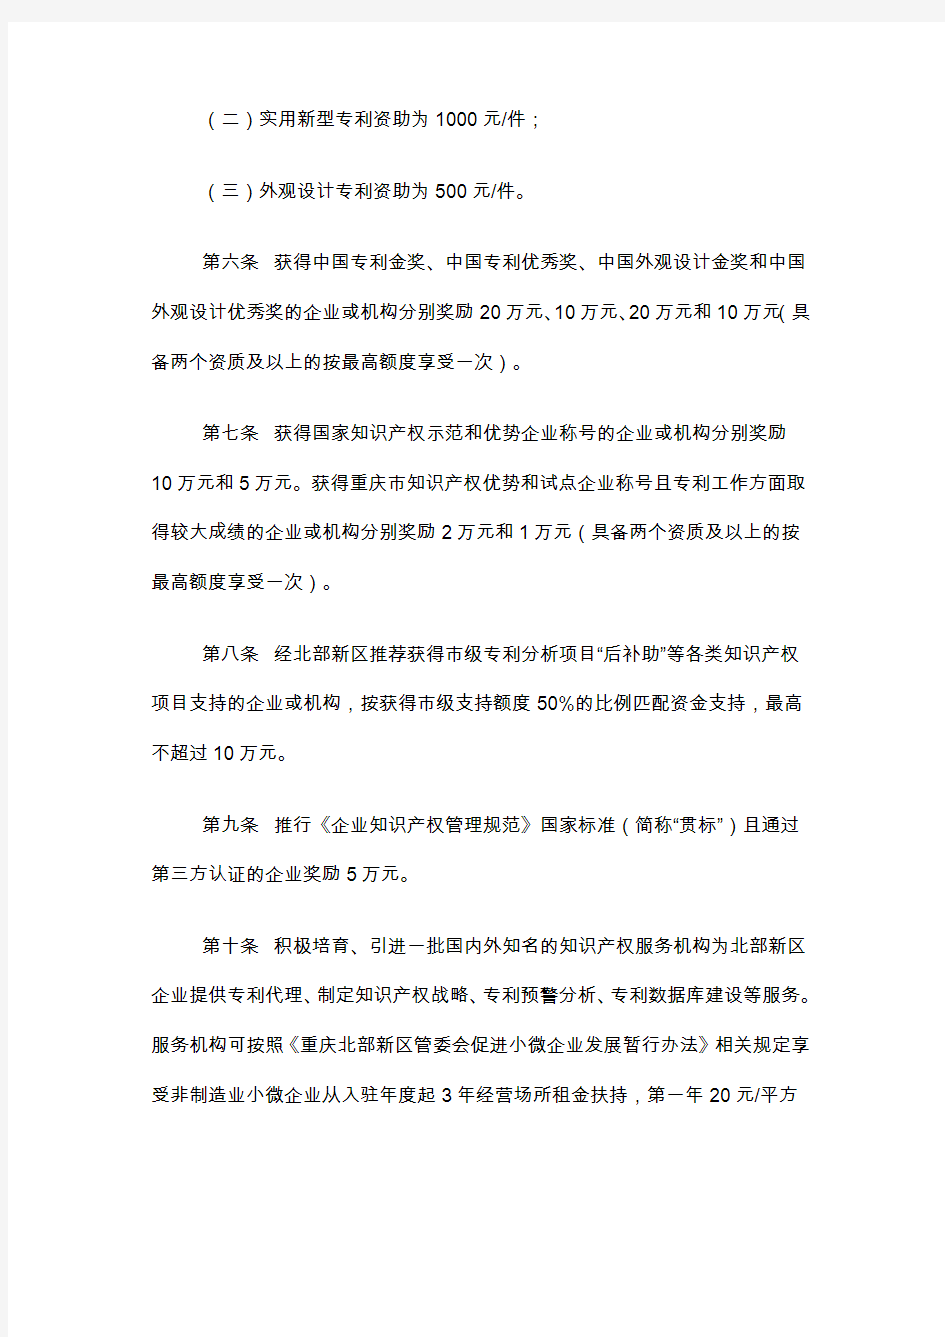 重庆北部新区促进知识产权发展暂行办法